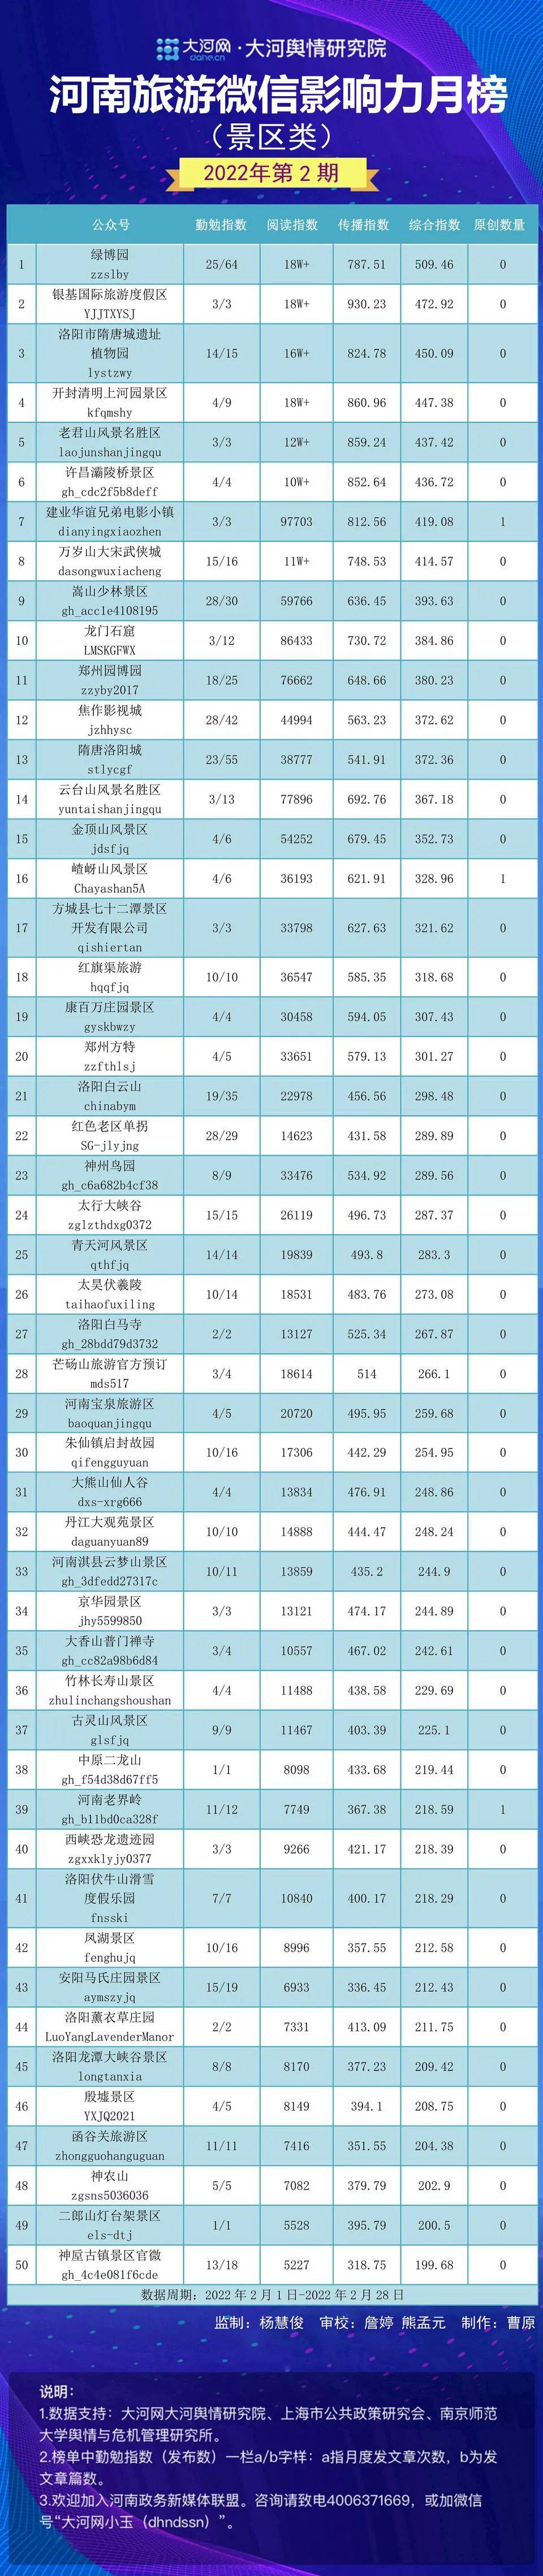 洛阳市|2022河南旅游微信影响力月榜（景区类）第2期